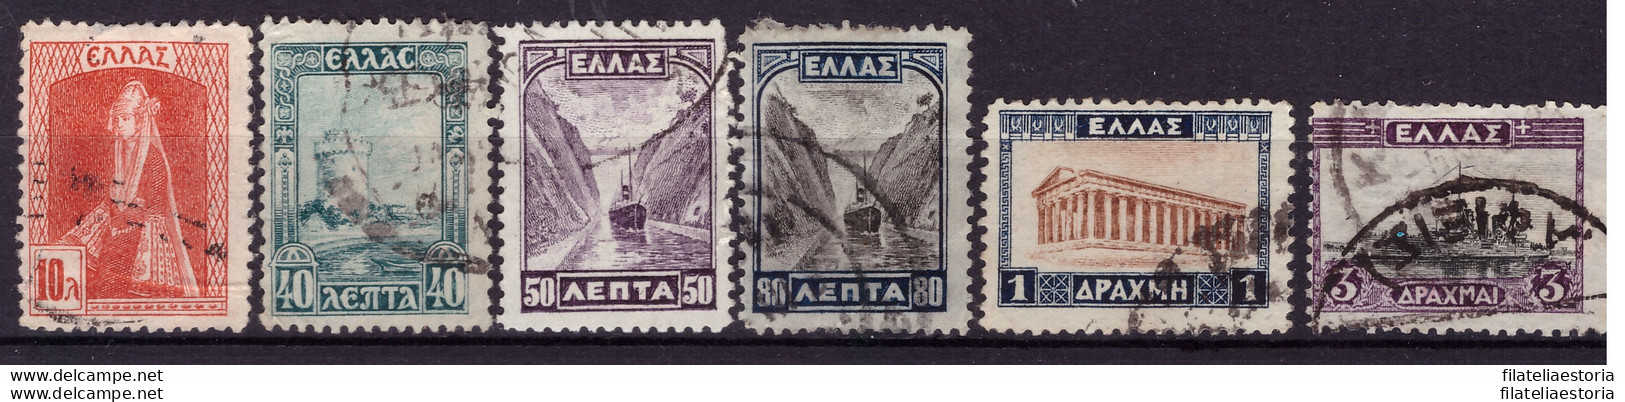 Grèce 1927 - Oblitéré - Costumes - Monuments - Michel Nr. 305 308-311 313 (gre1019) - Usati